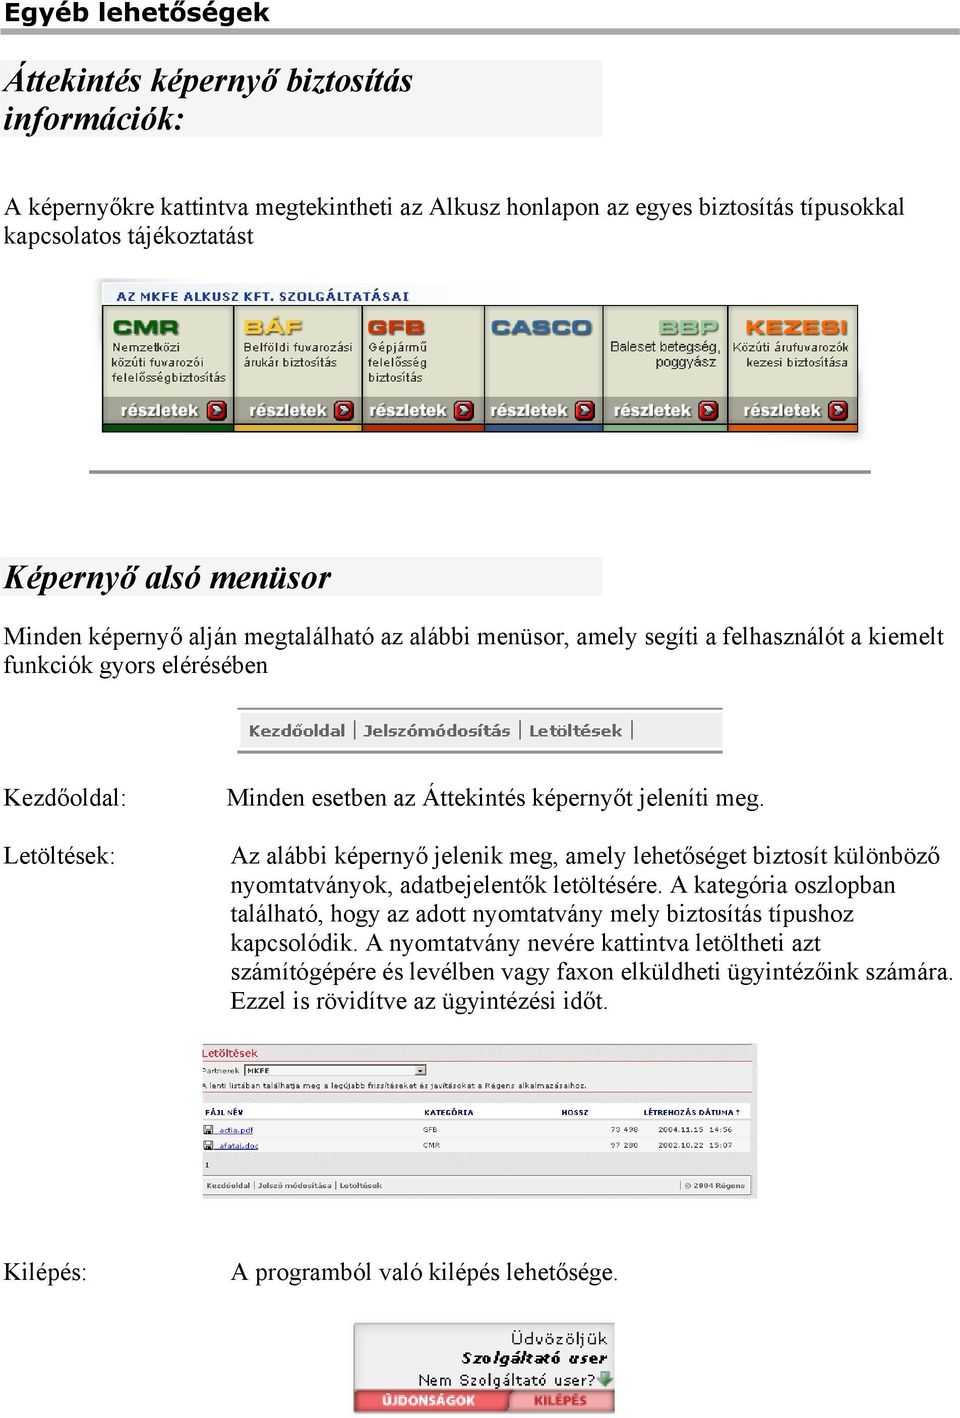 Ügyfélkapu. On-line információs és ügyfélszolgálati rendszer Felhasználói  Dokumentáció - PDF Free Download